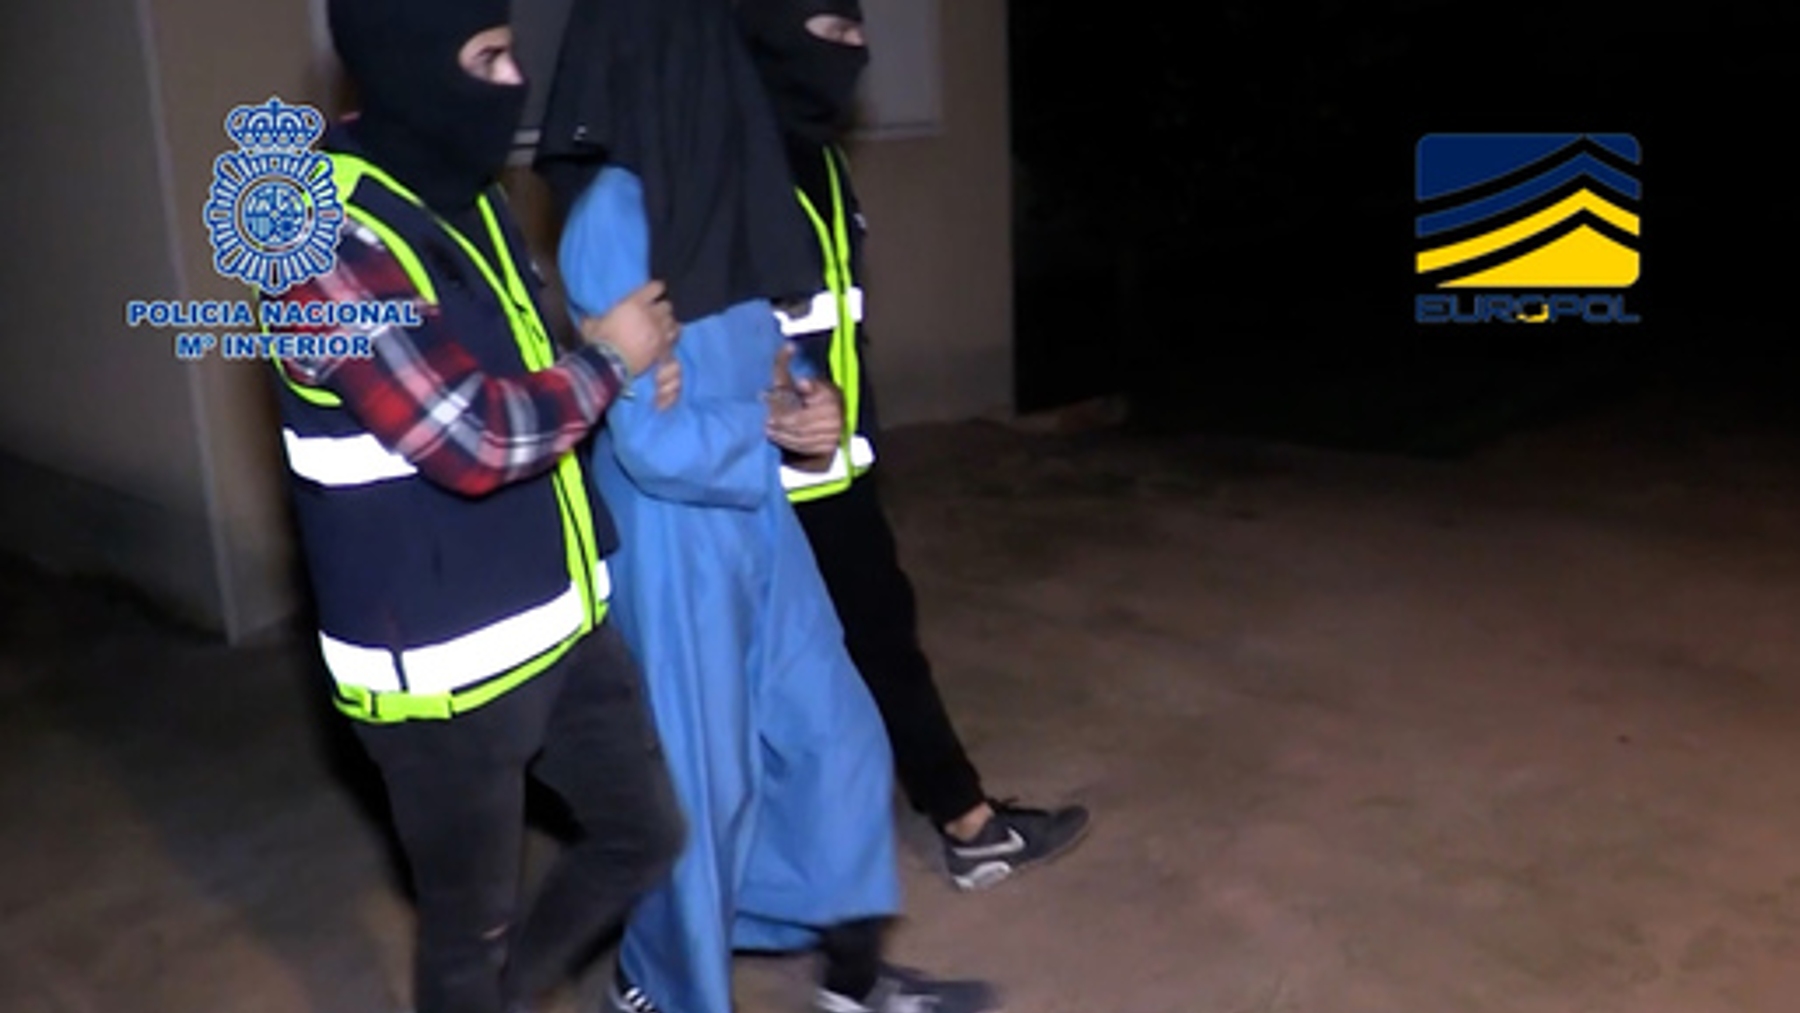 Uno de los yihadistas detenidos es conducido por agentes de la Policía Nacional (CNP).